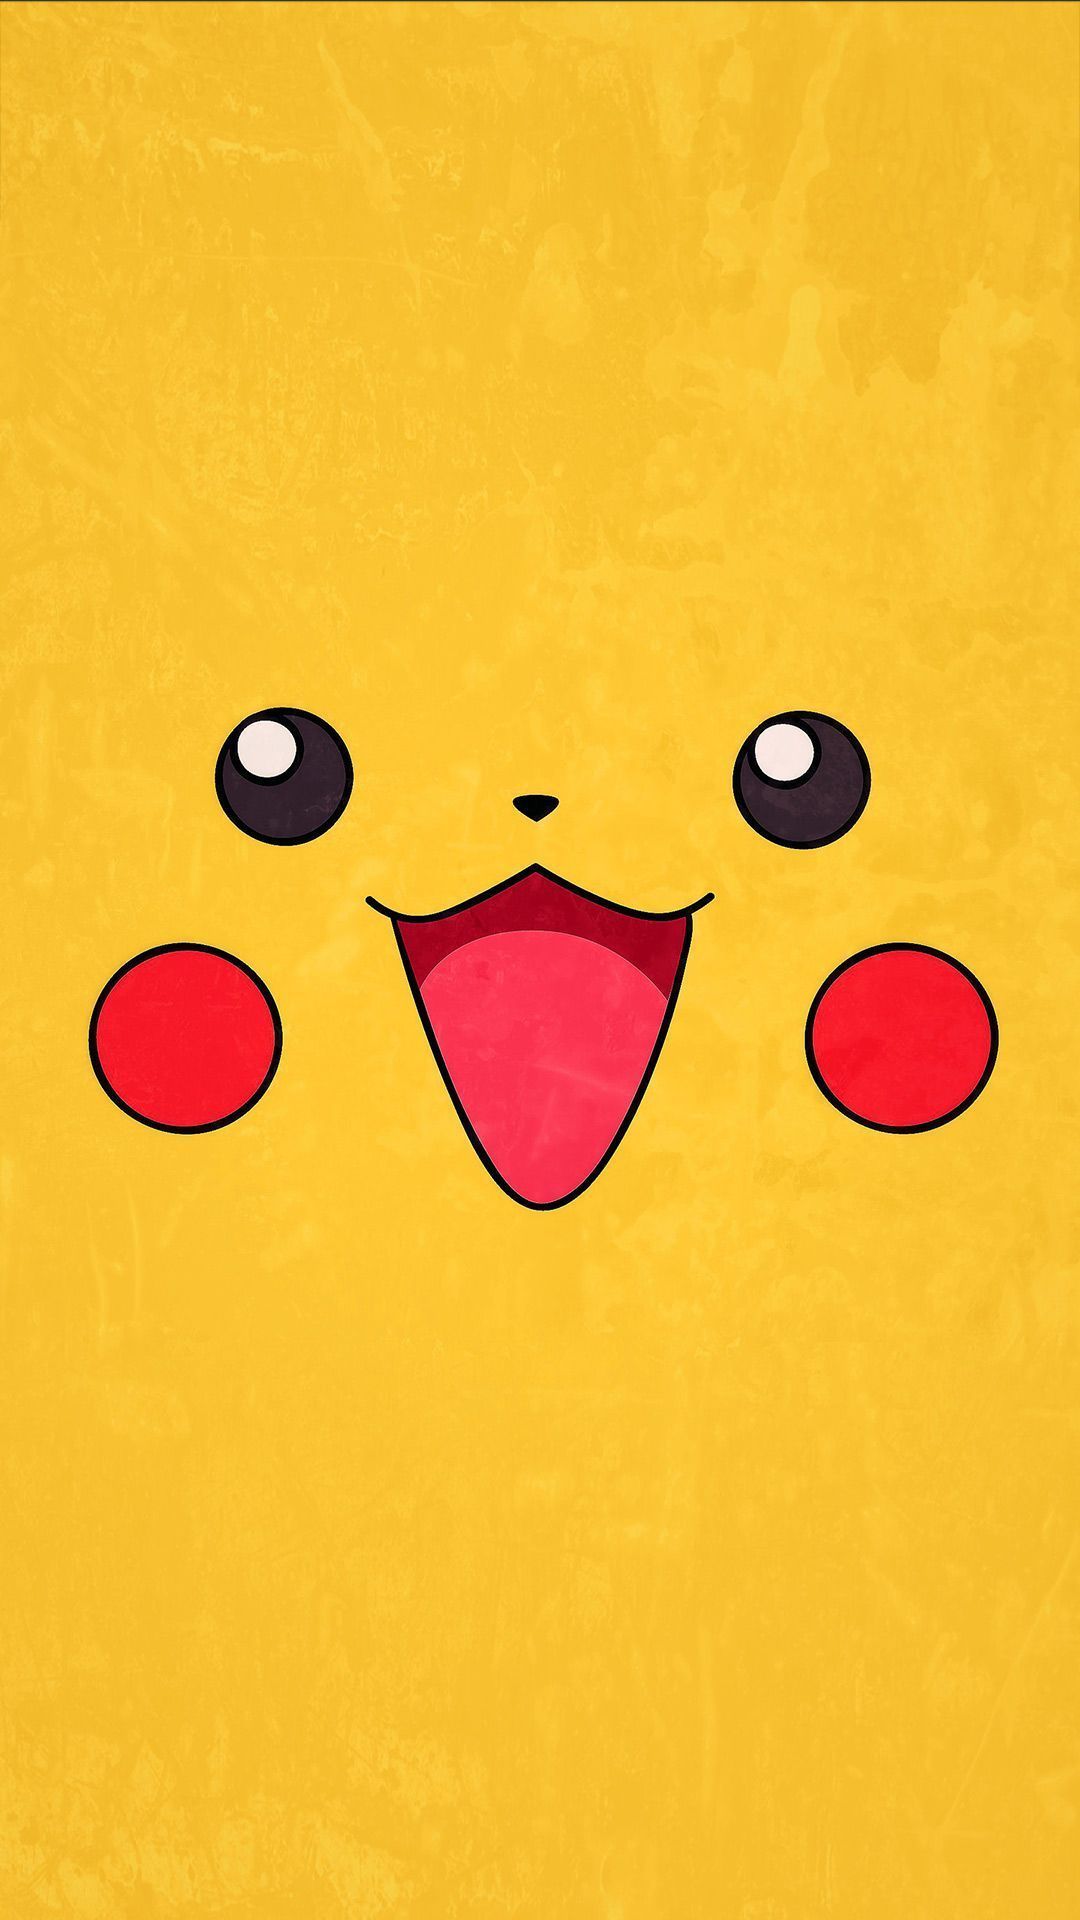 50 Pikachu iPhone Wallpaper  WallpaperSafari